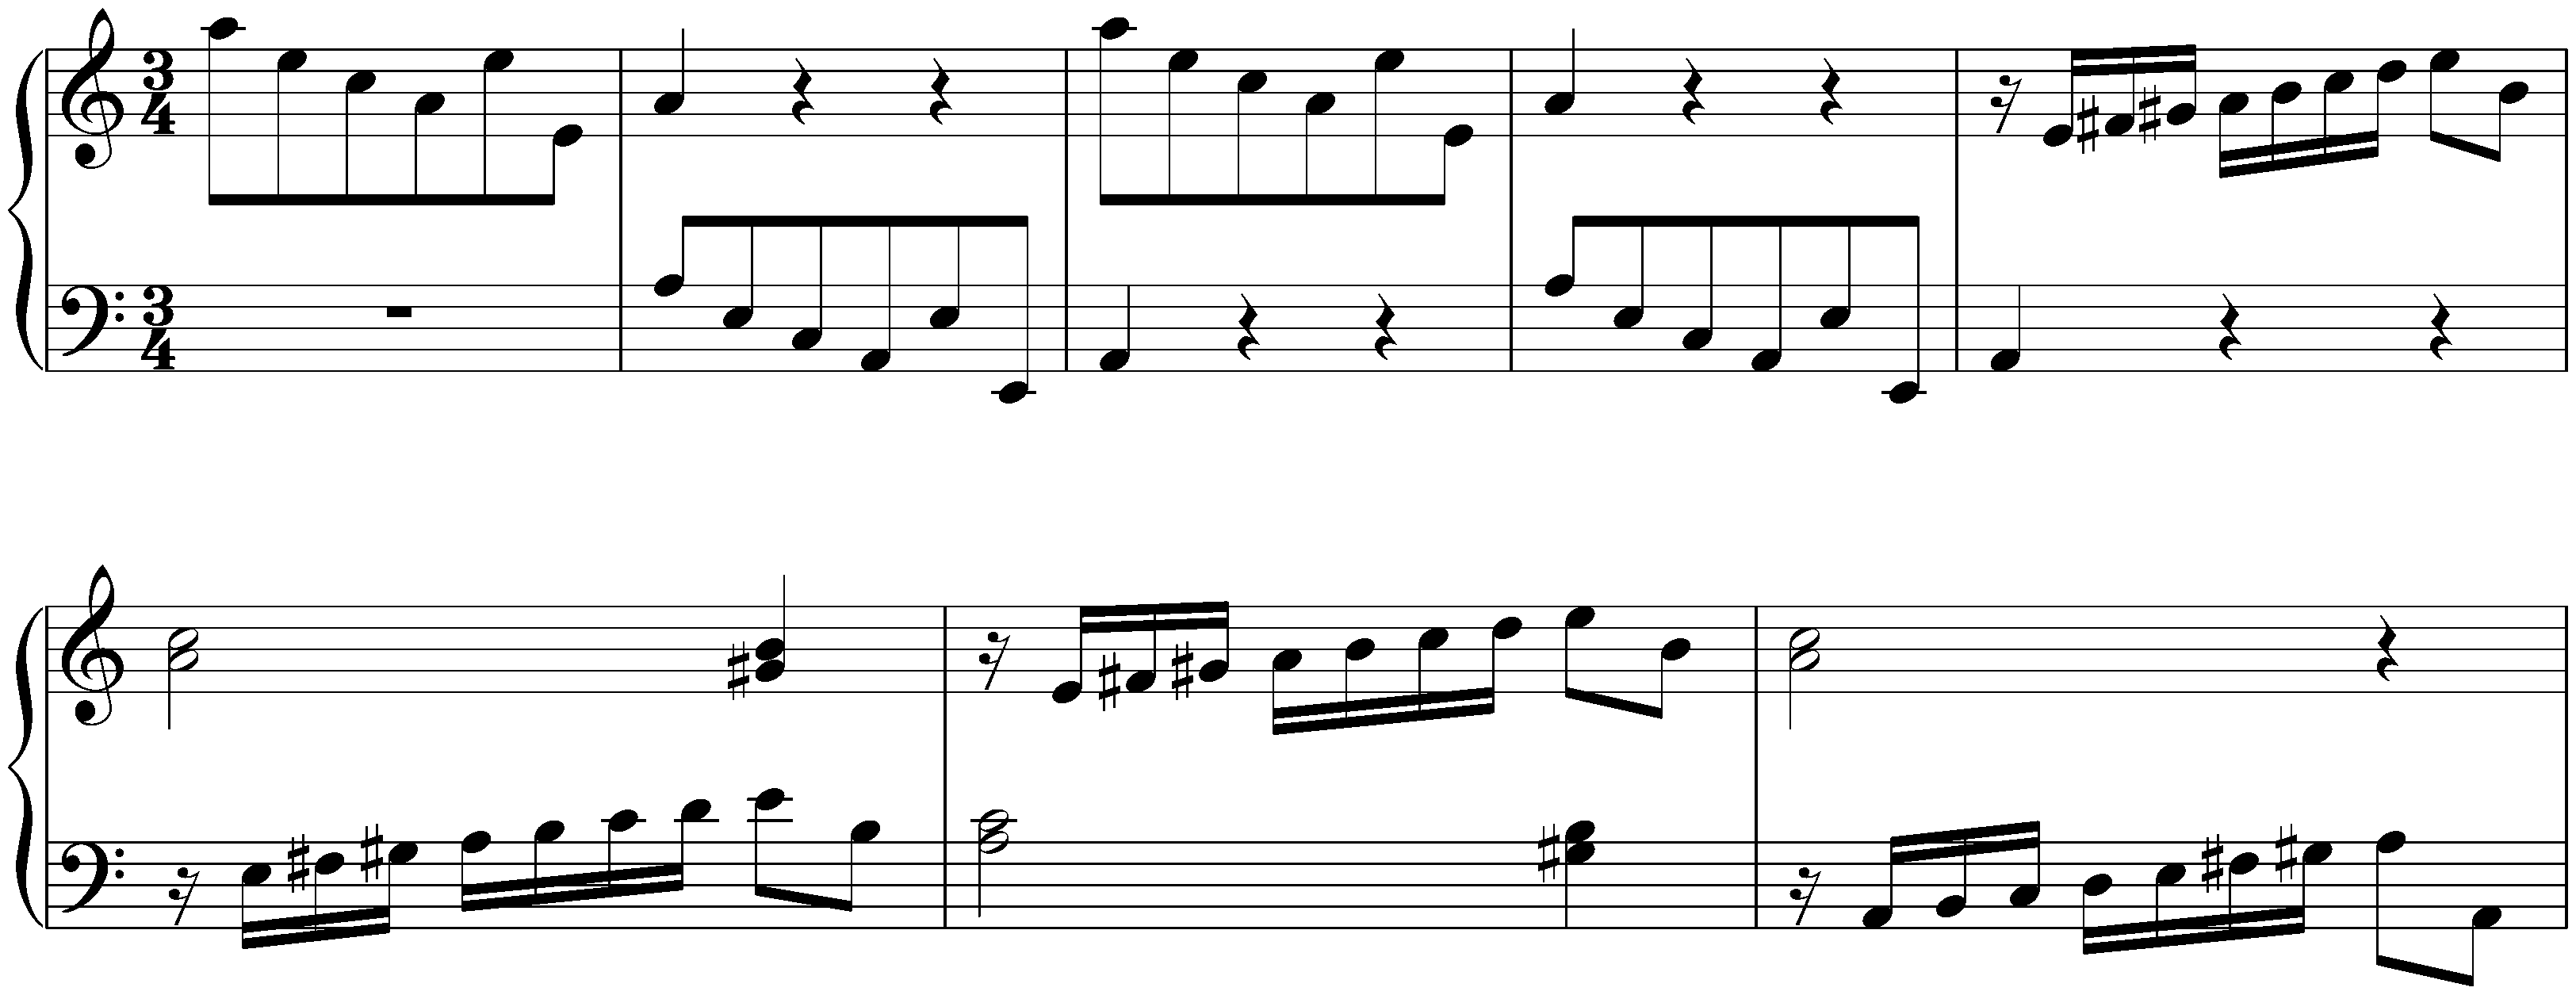 Sonatina in A minor, HWV 584